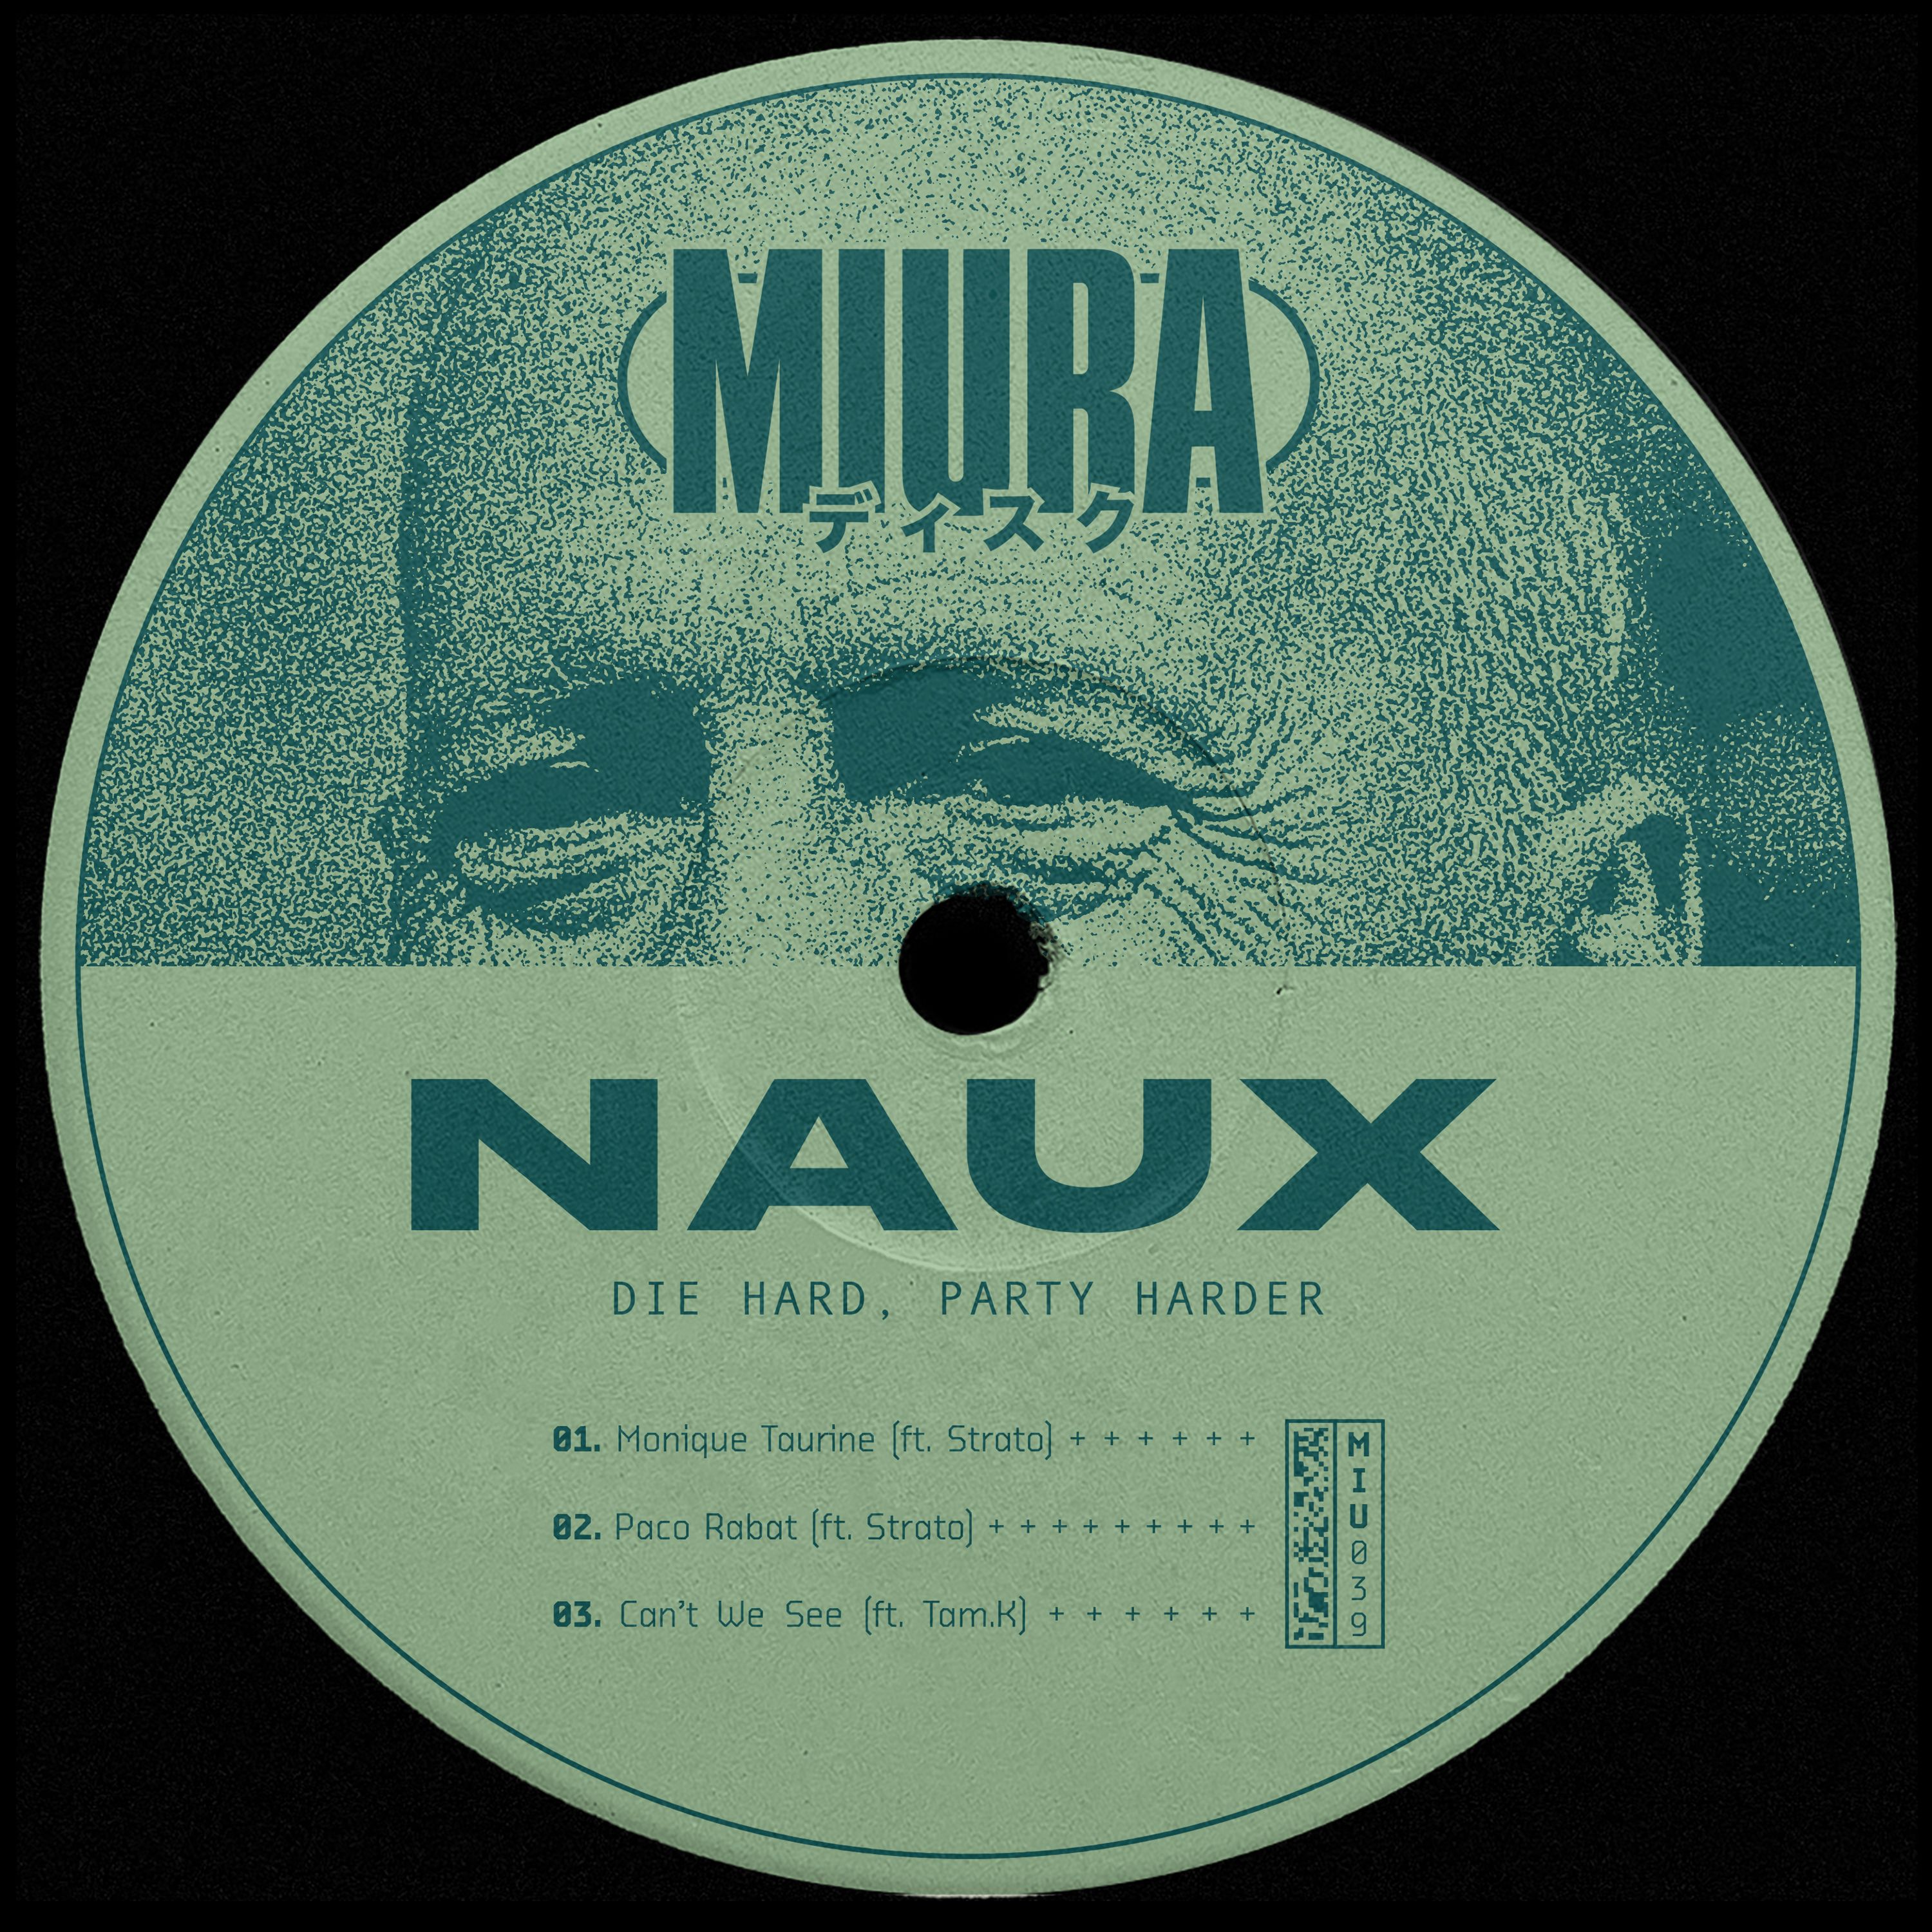 ¡Descargar PREMIERE: Naux & Strato - Monique Taurine [Miura Records]